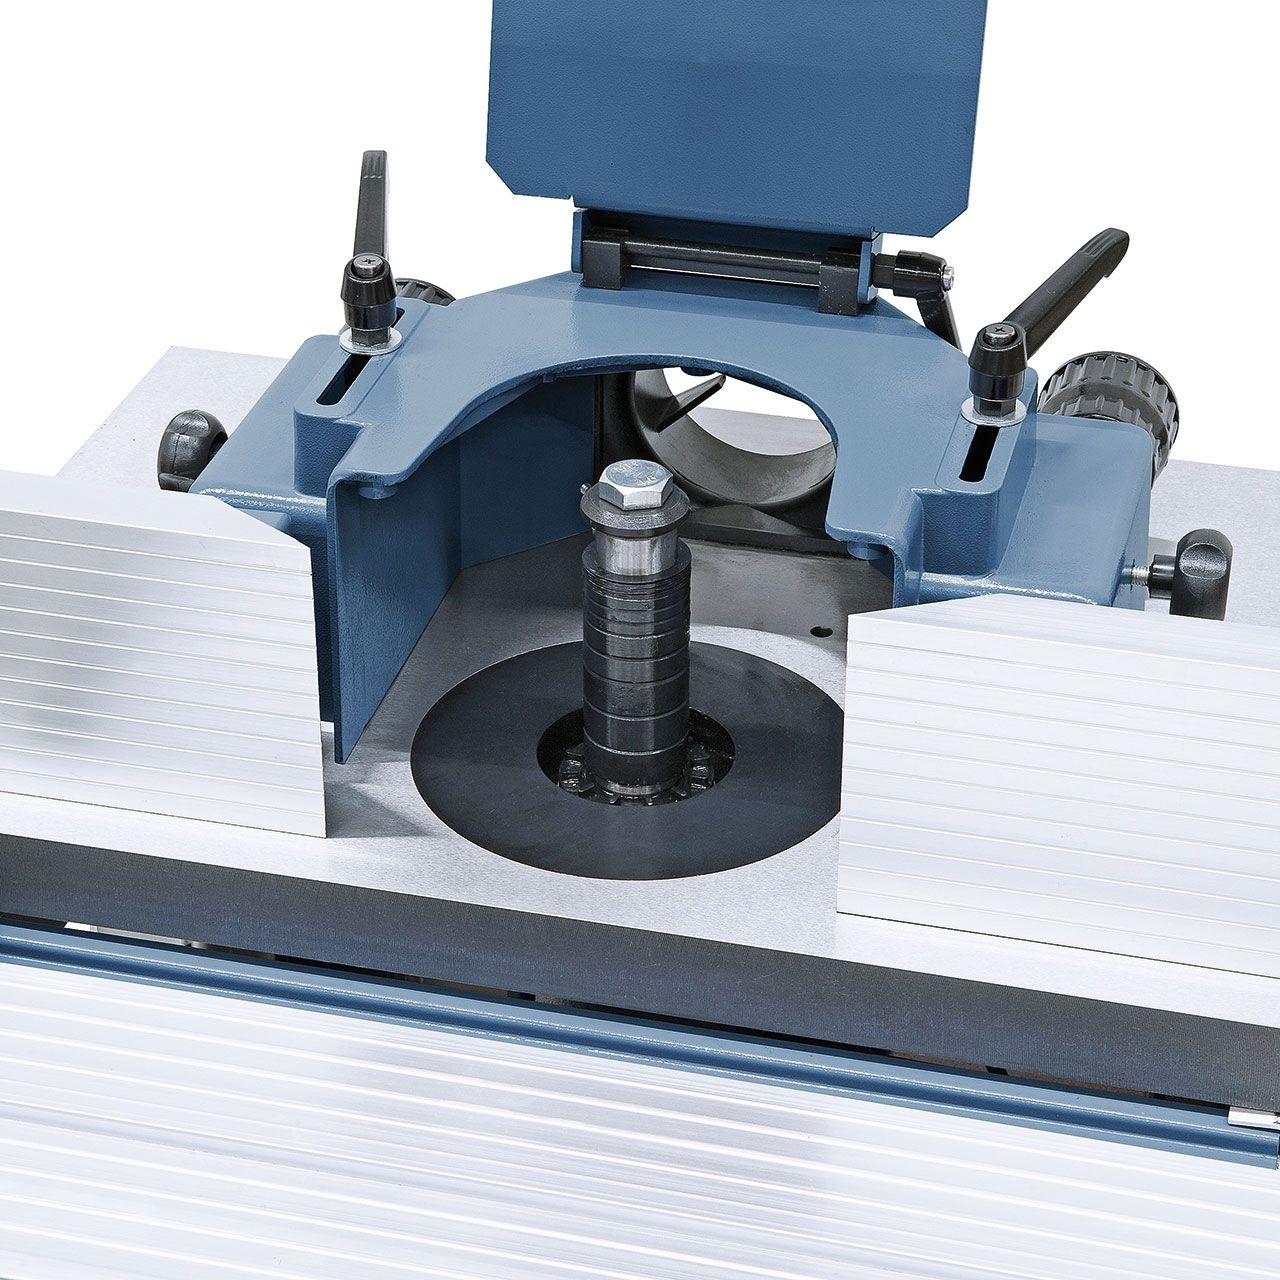 Tischfräsmaschine T 500 PR - 230 V